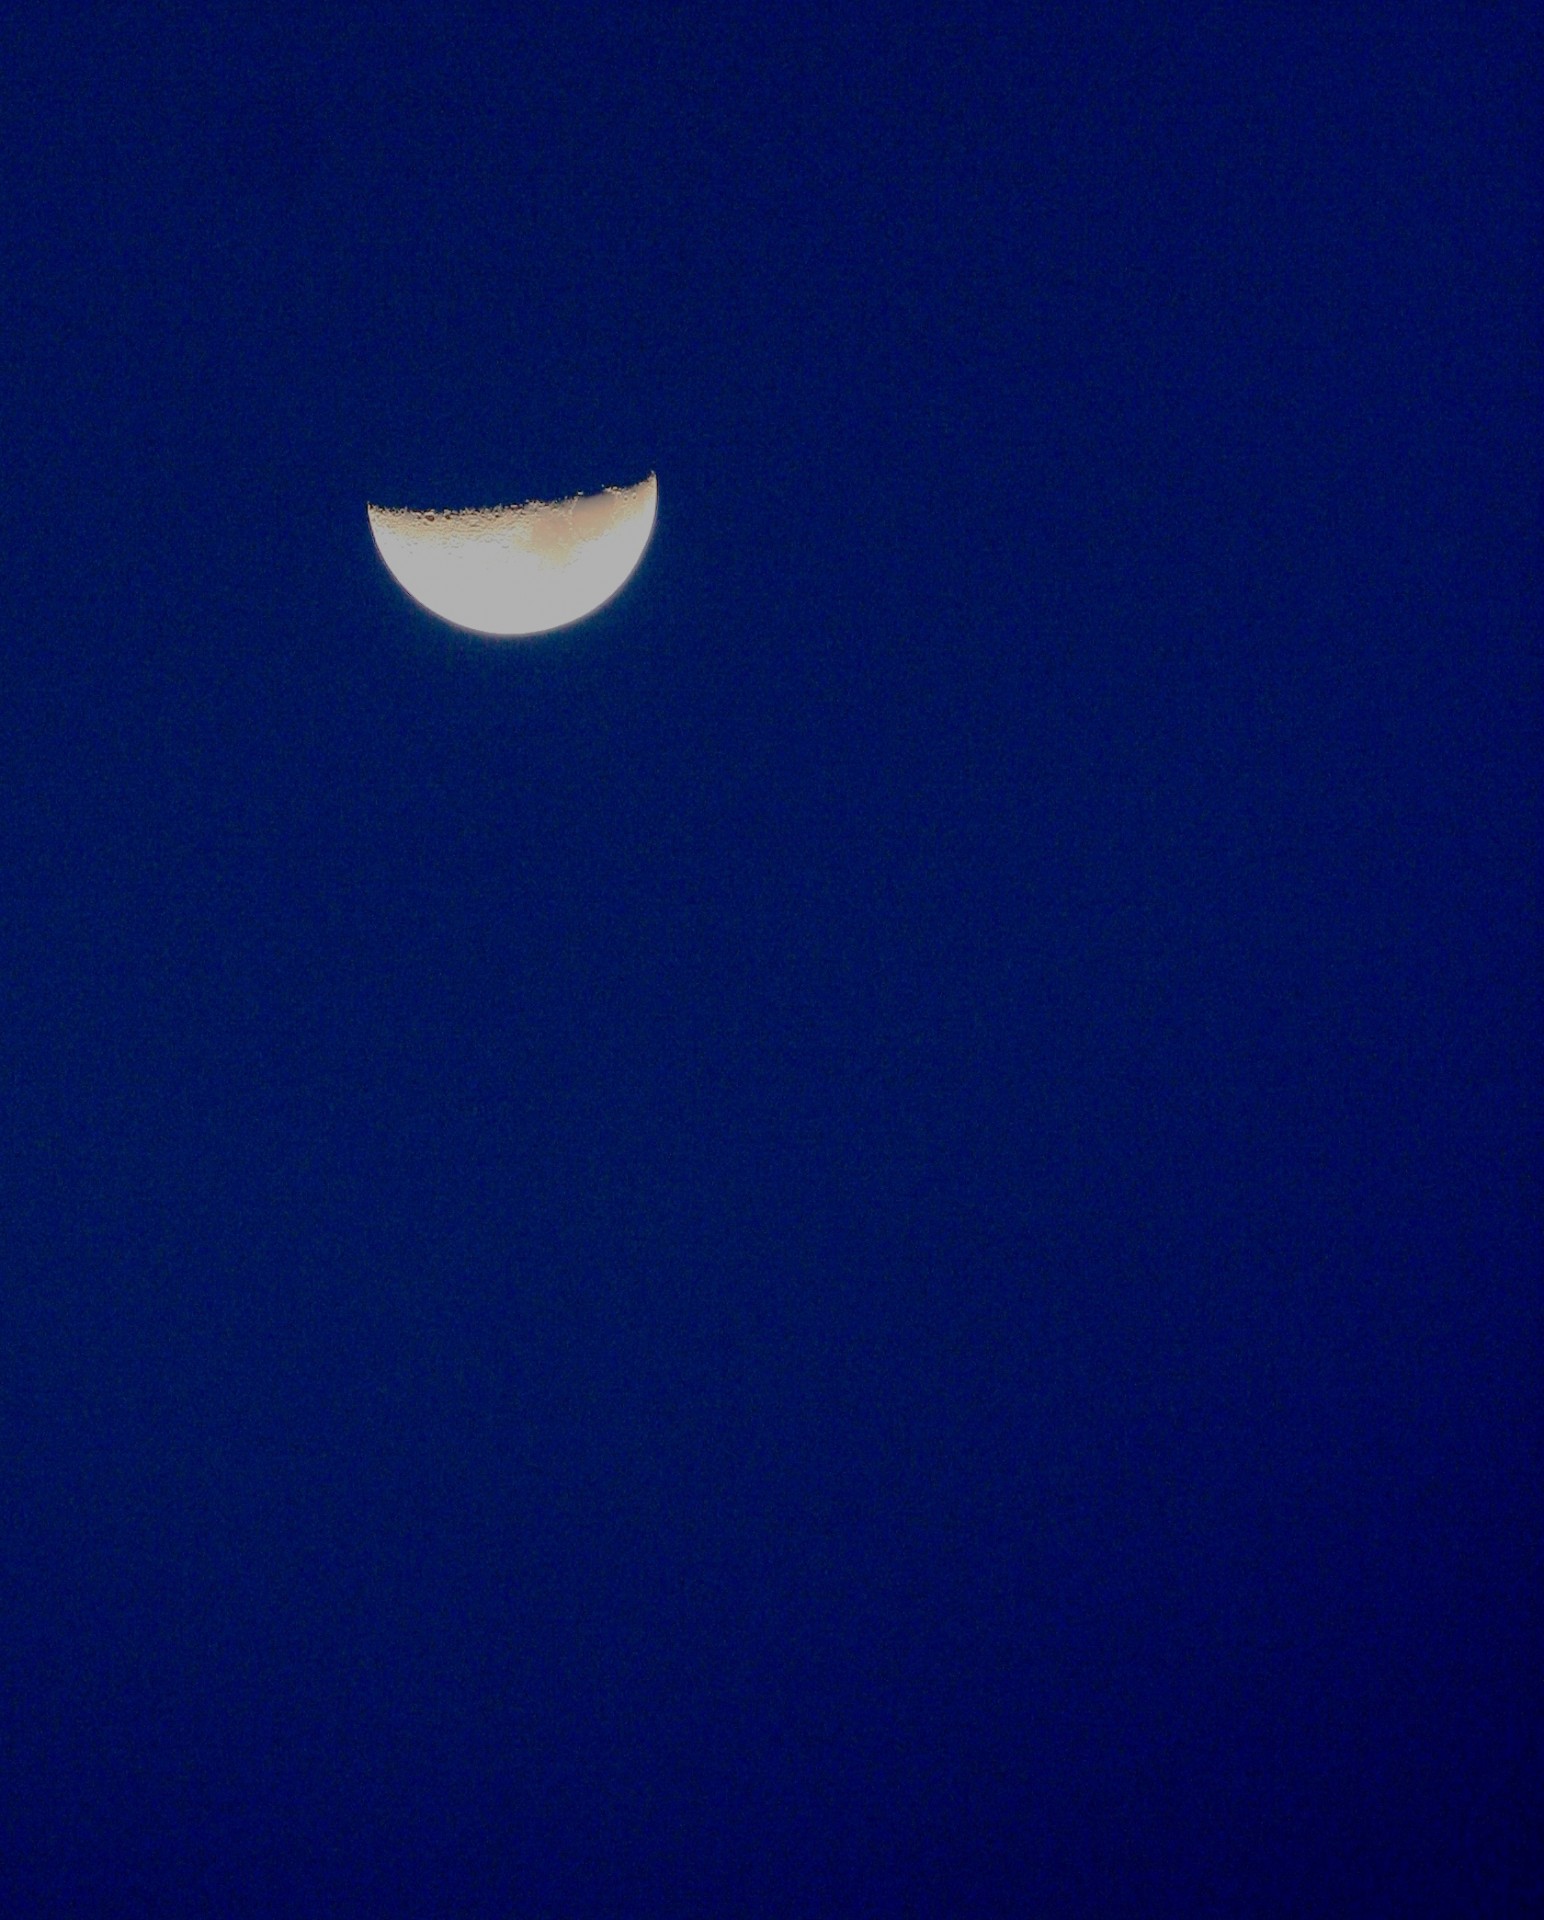 moon white bright free photo